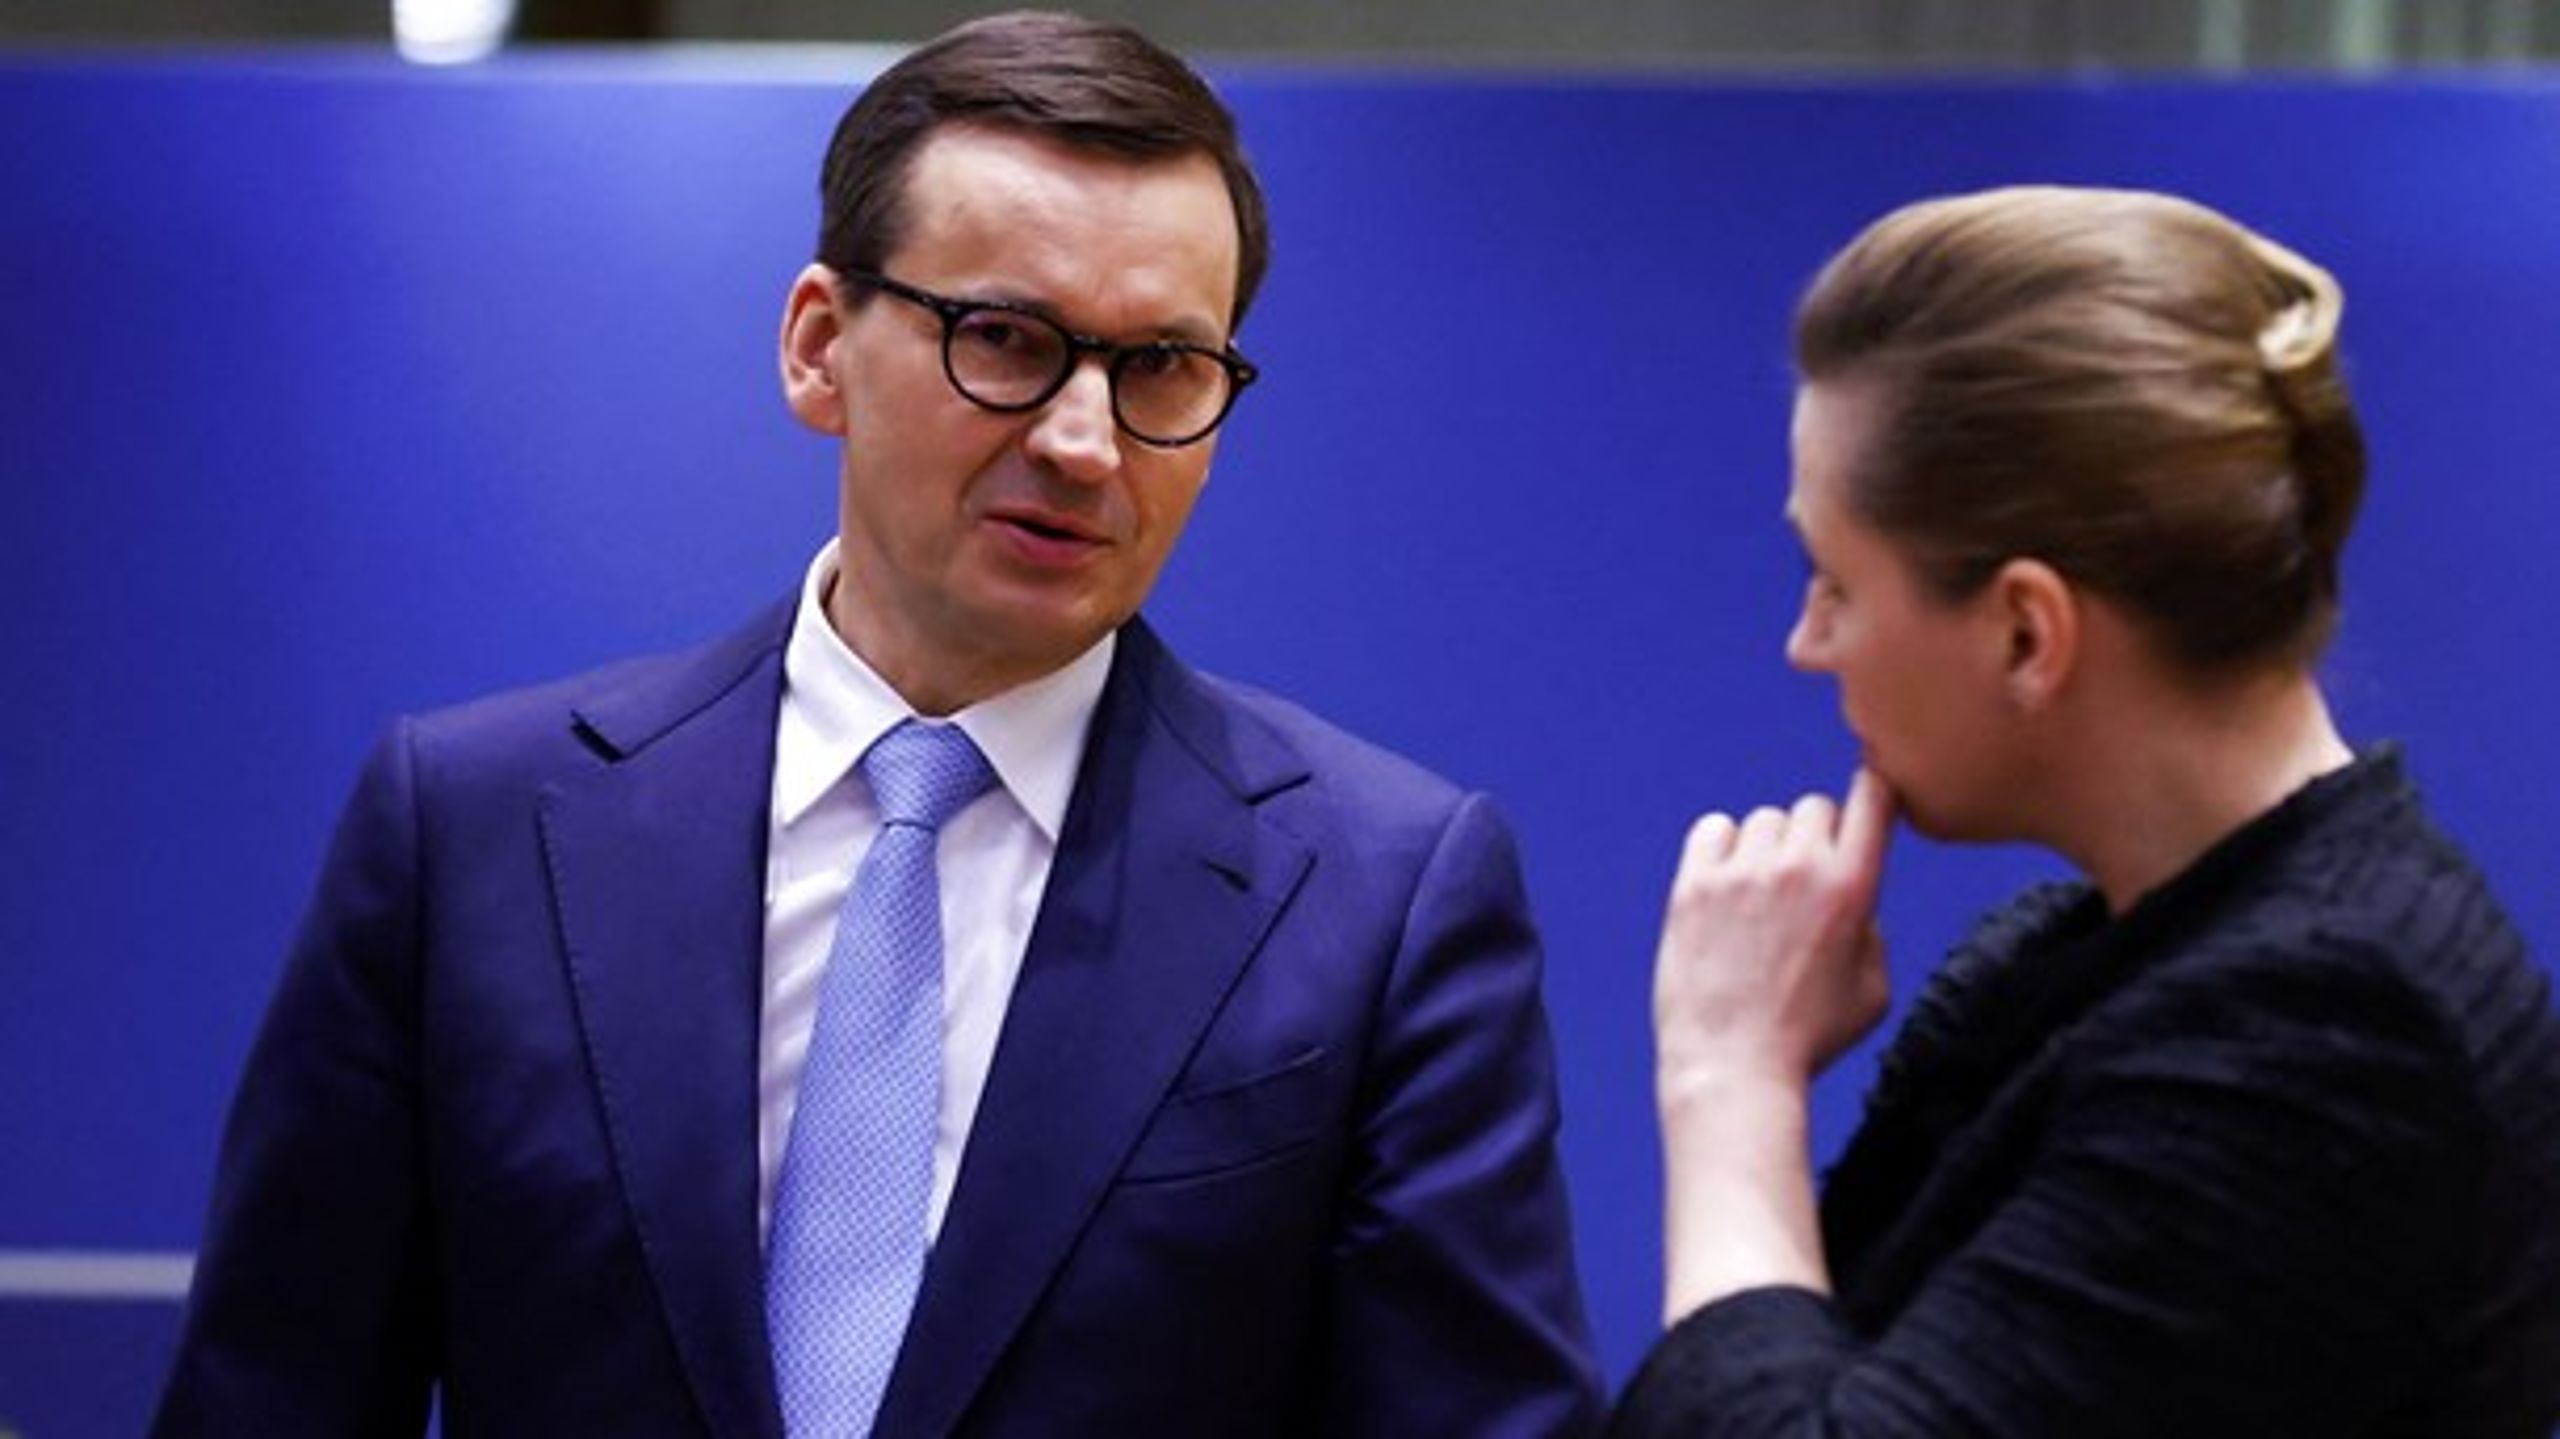 Polen slår sig i tøjret over en aftale om en global selskabsskat. Det truer med at afspore et EU-topmøde, hvor Polens premierminister, Mateusz Morawiecki, vil komme i en svær situation.